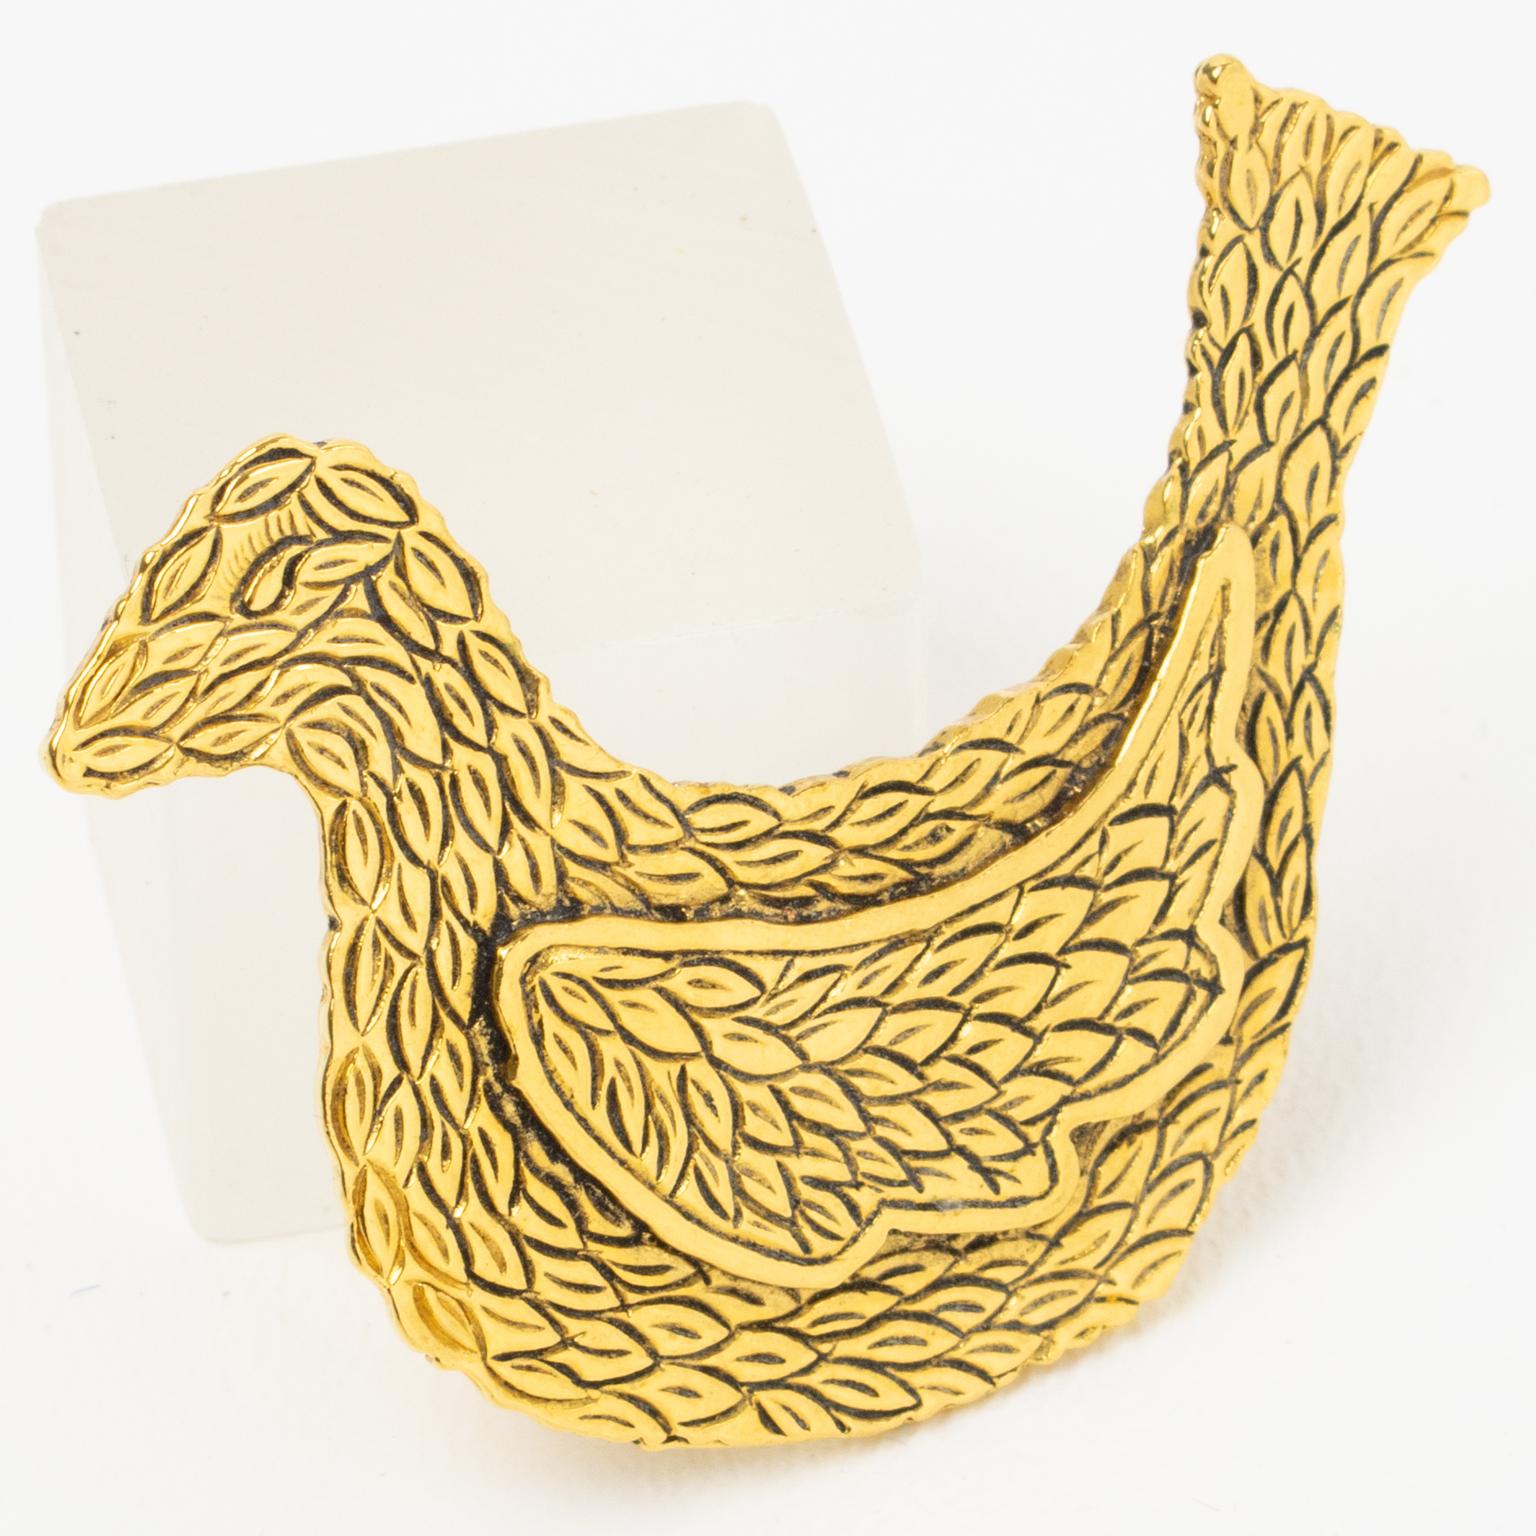 Artist Isabel Canovas Gilt Bronze Bird Pin brooch